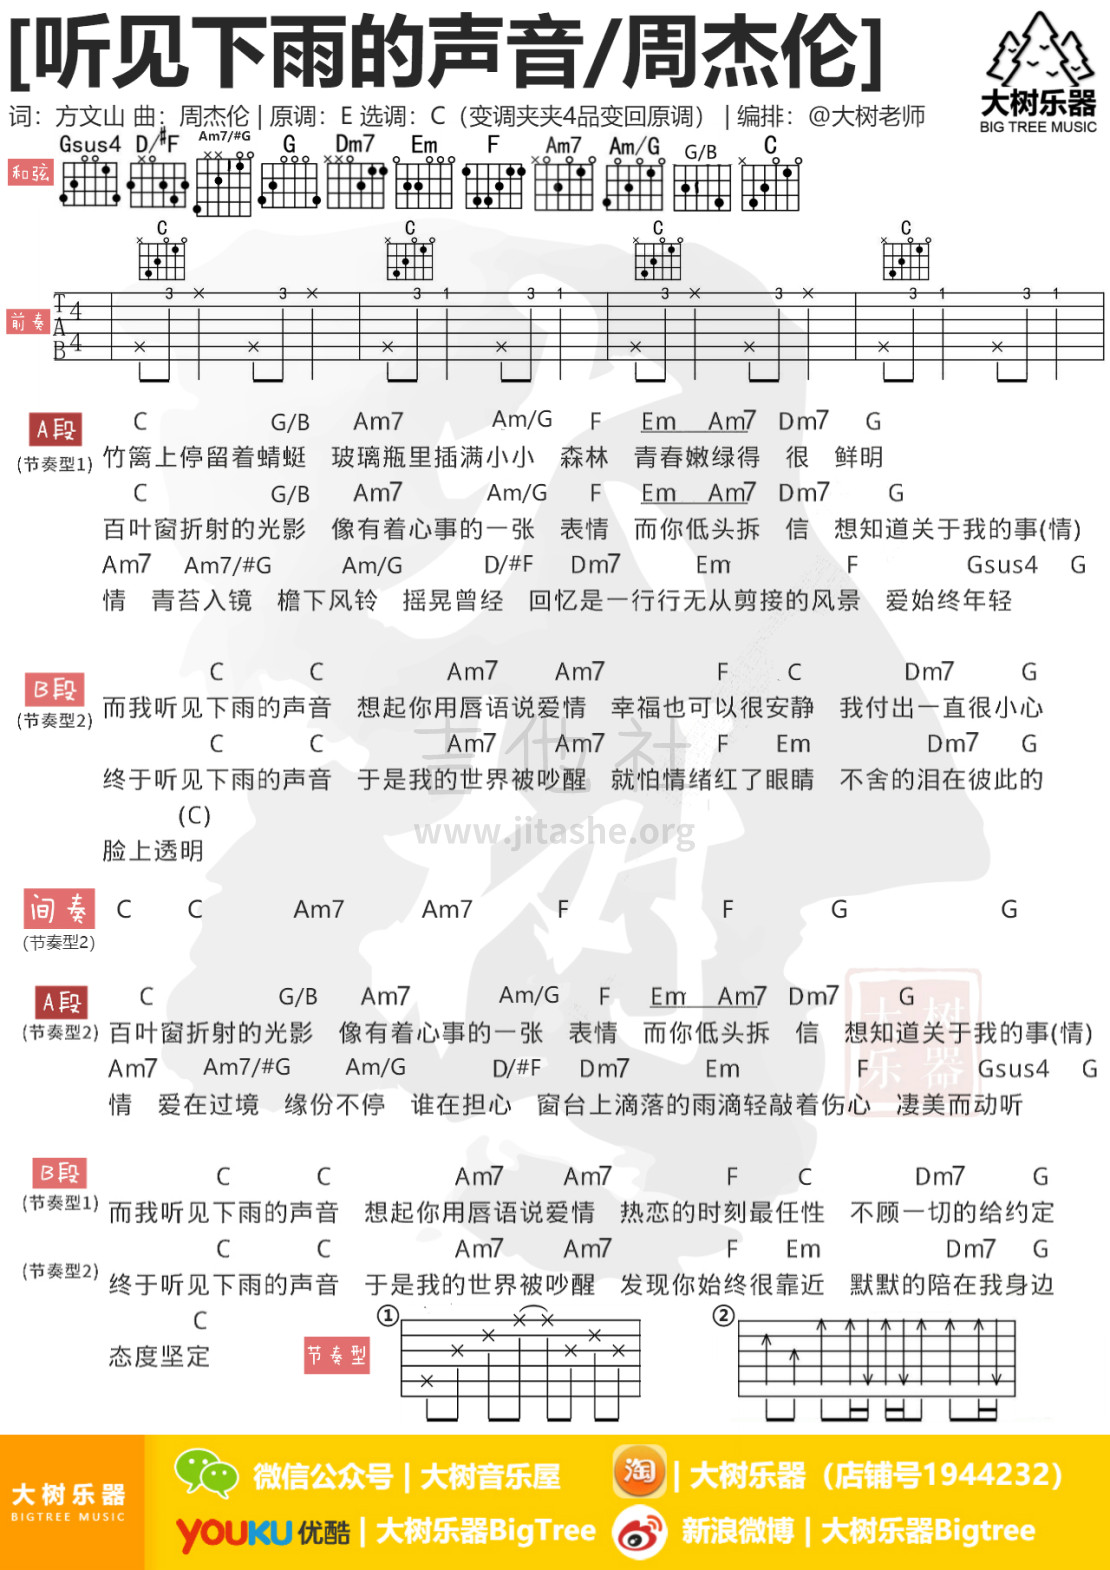 听见下雨的声音(大树乐器-大树音乐)吉他谱(图片谱,弹唱,教学)_周杰伦(Jay Chou)_模板_meitu_3_meitu_5.jpg